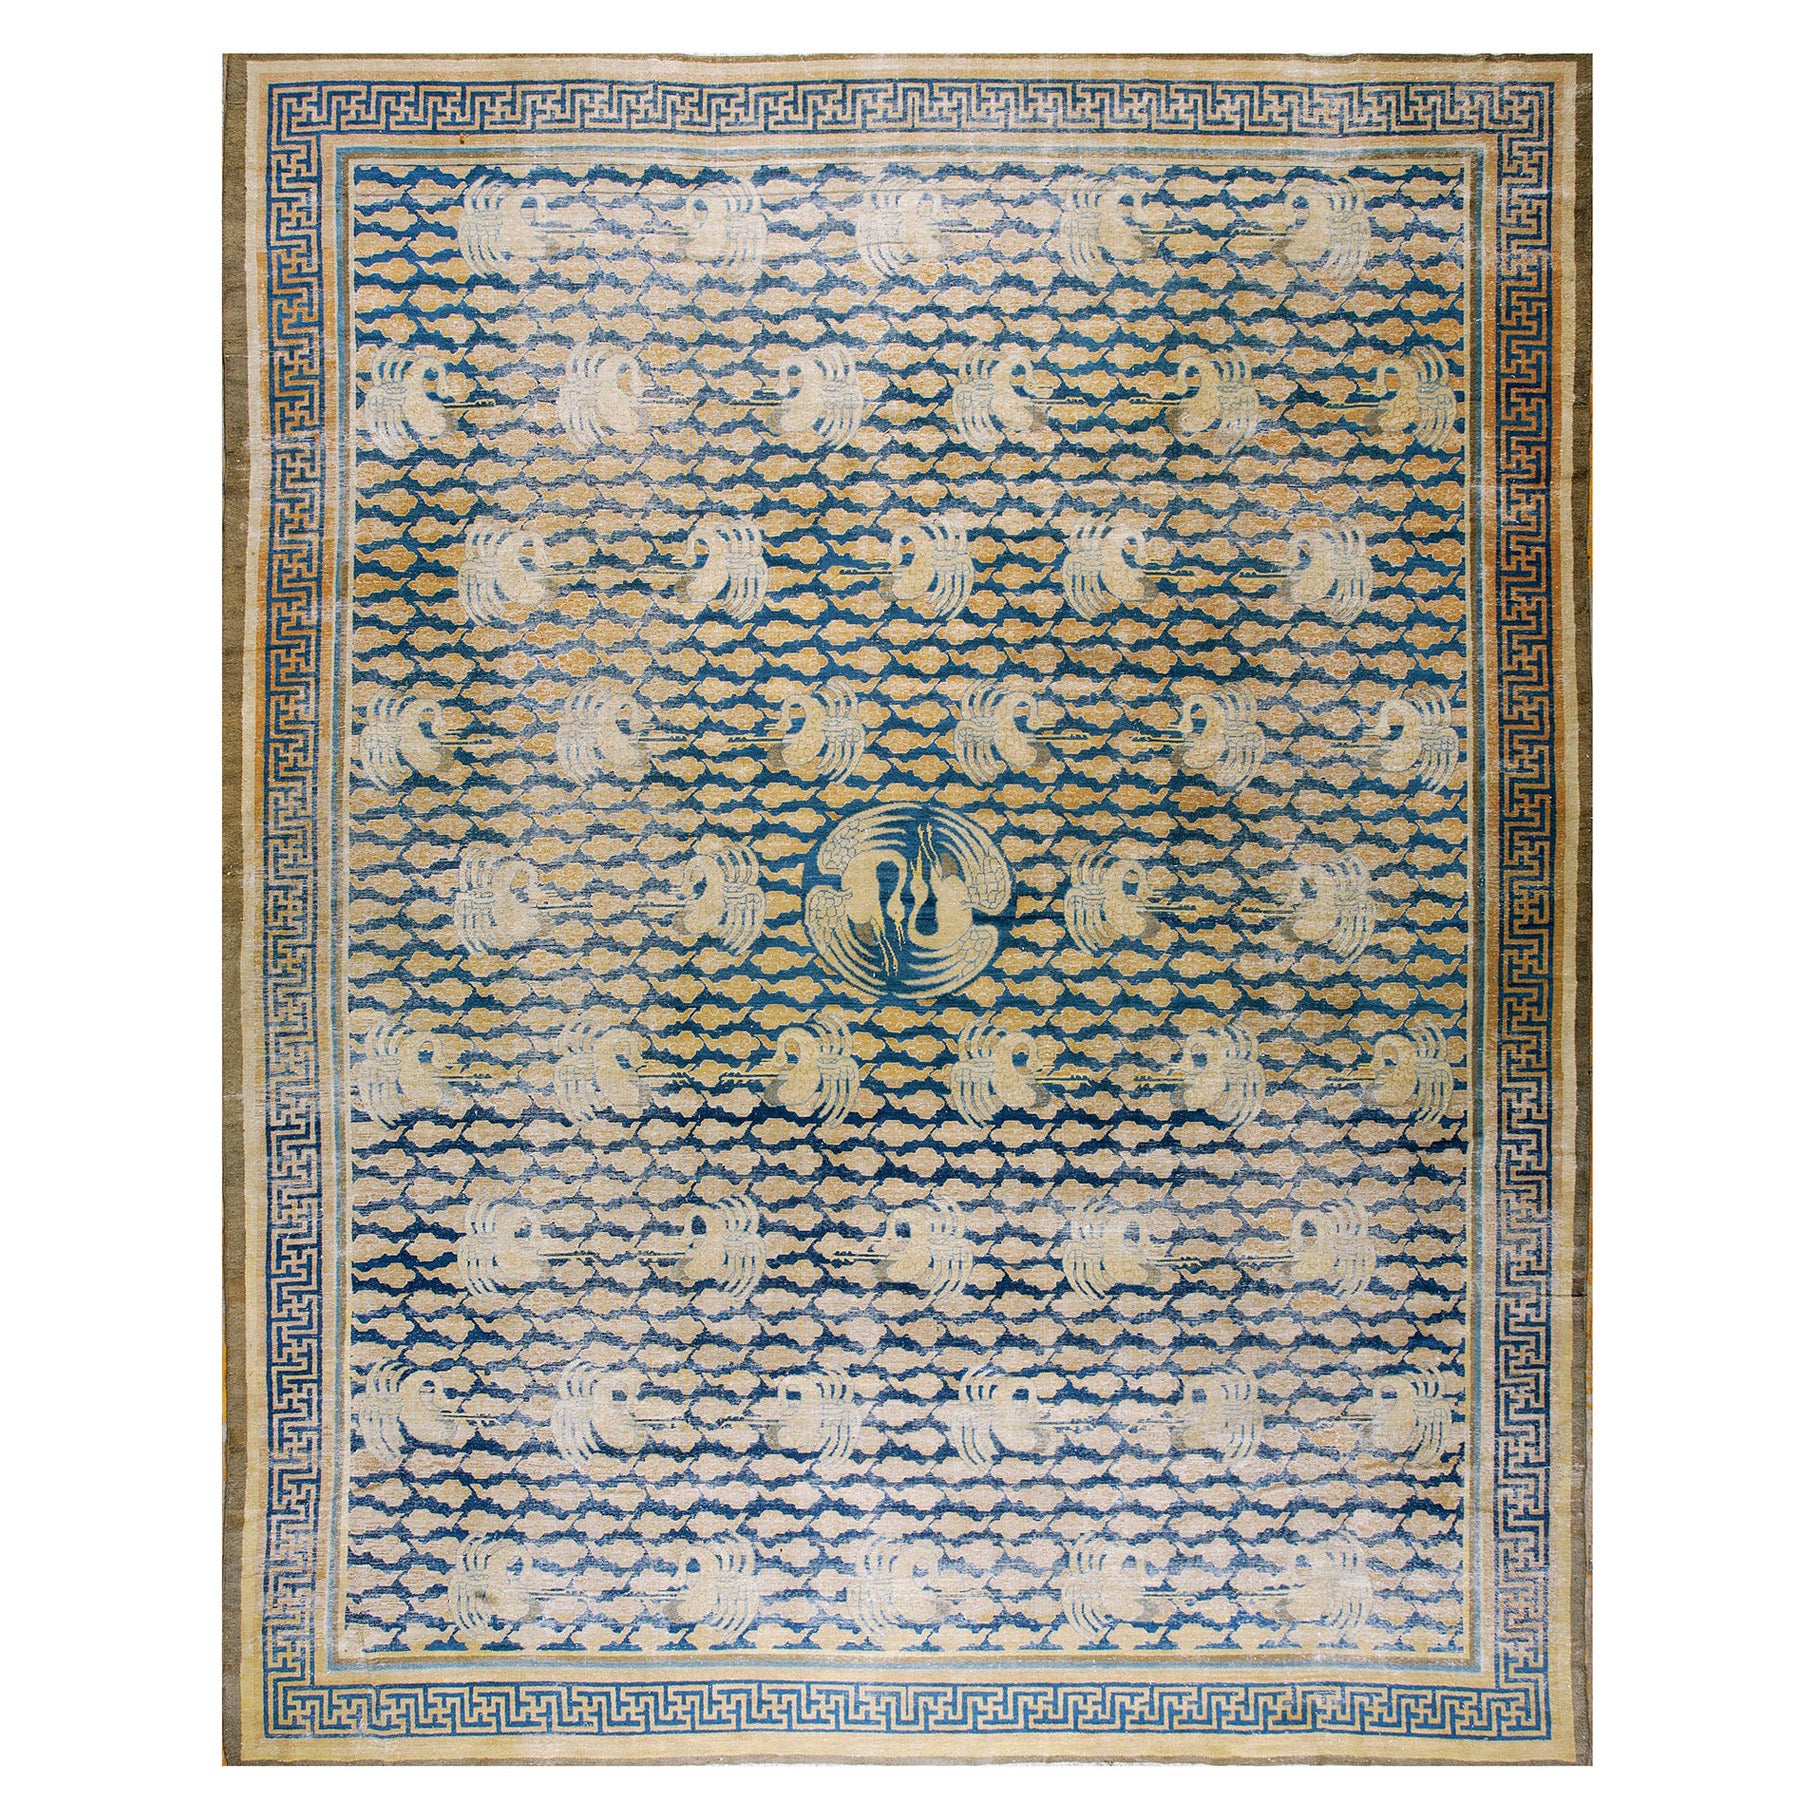 Chinesischer Teppich des späten 19. Jahrhunderts ( 11''6'''' x 14''6'''' - 350 x 442 )